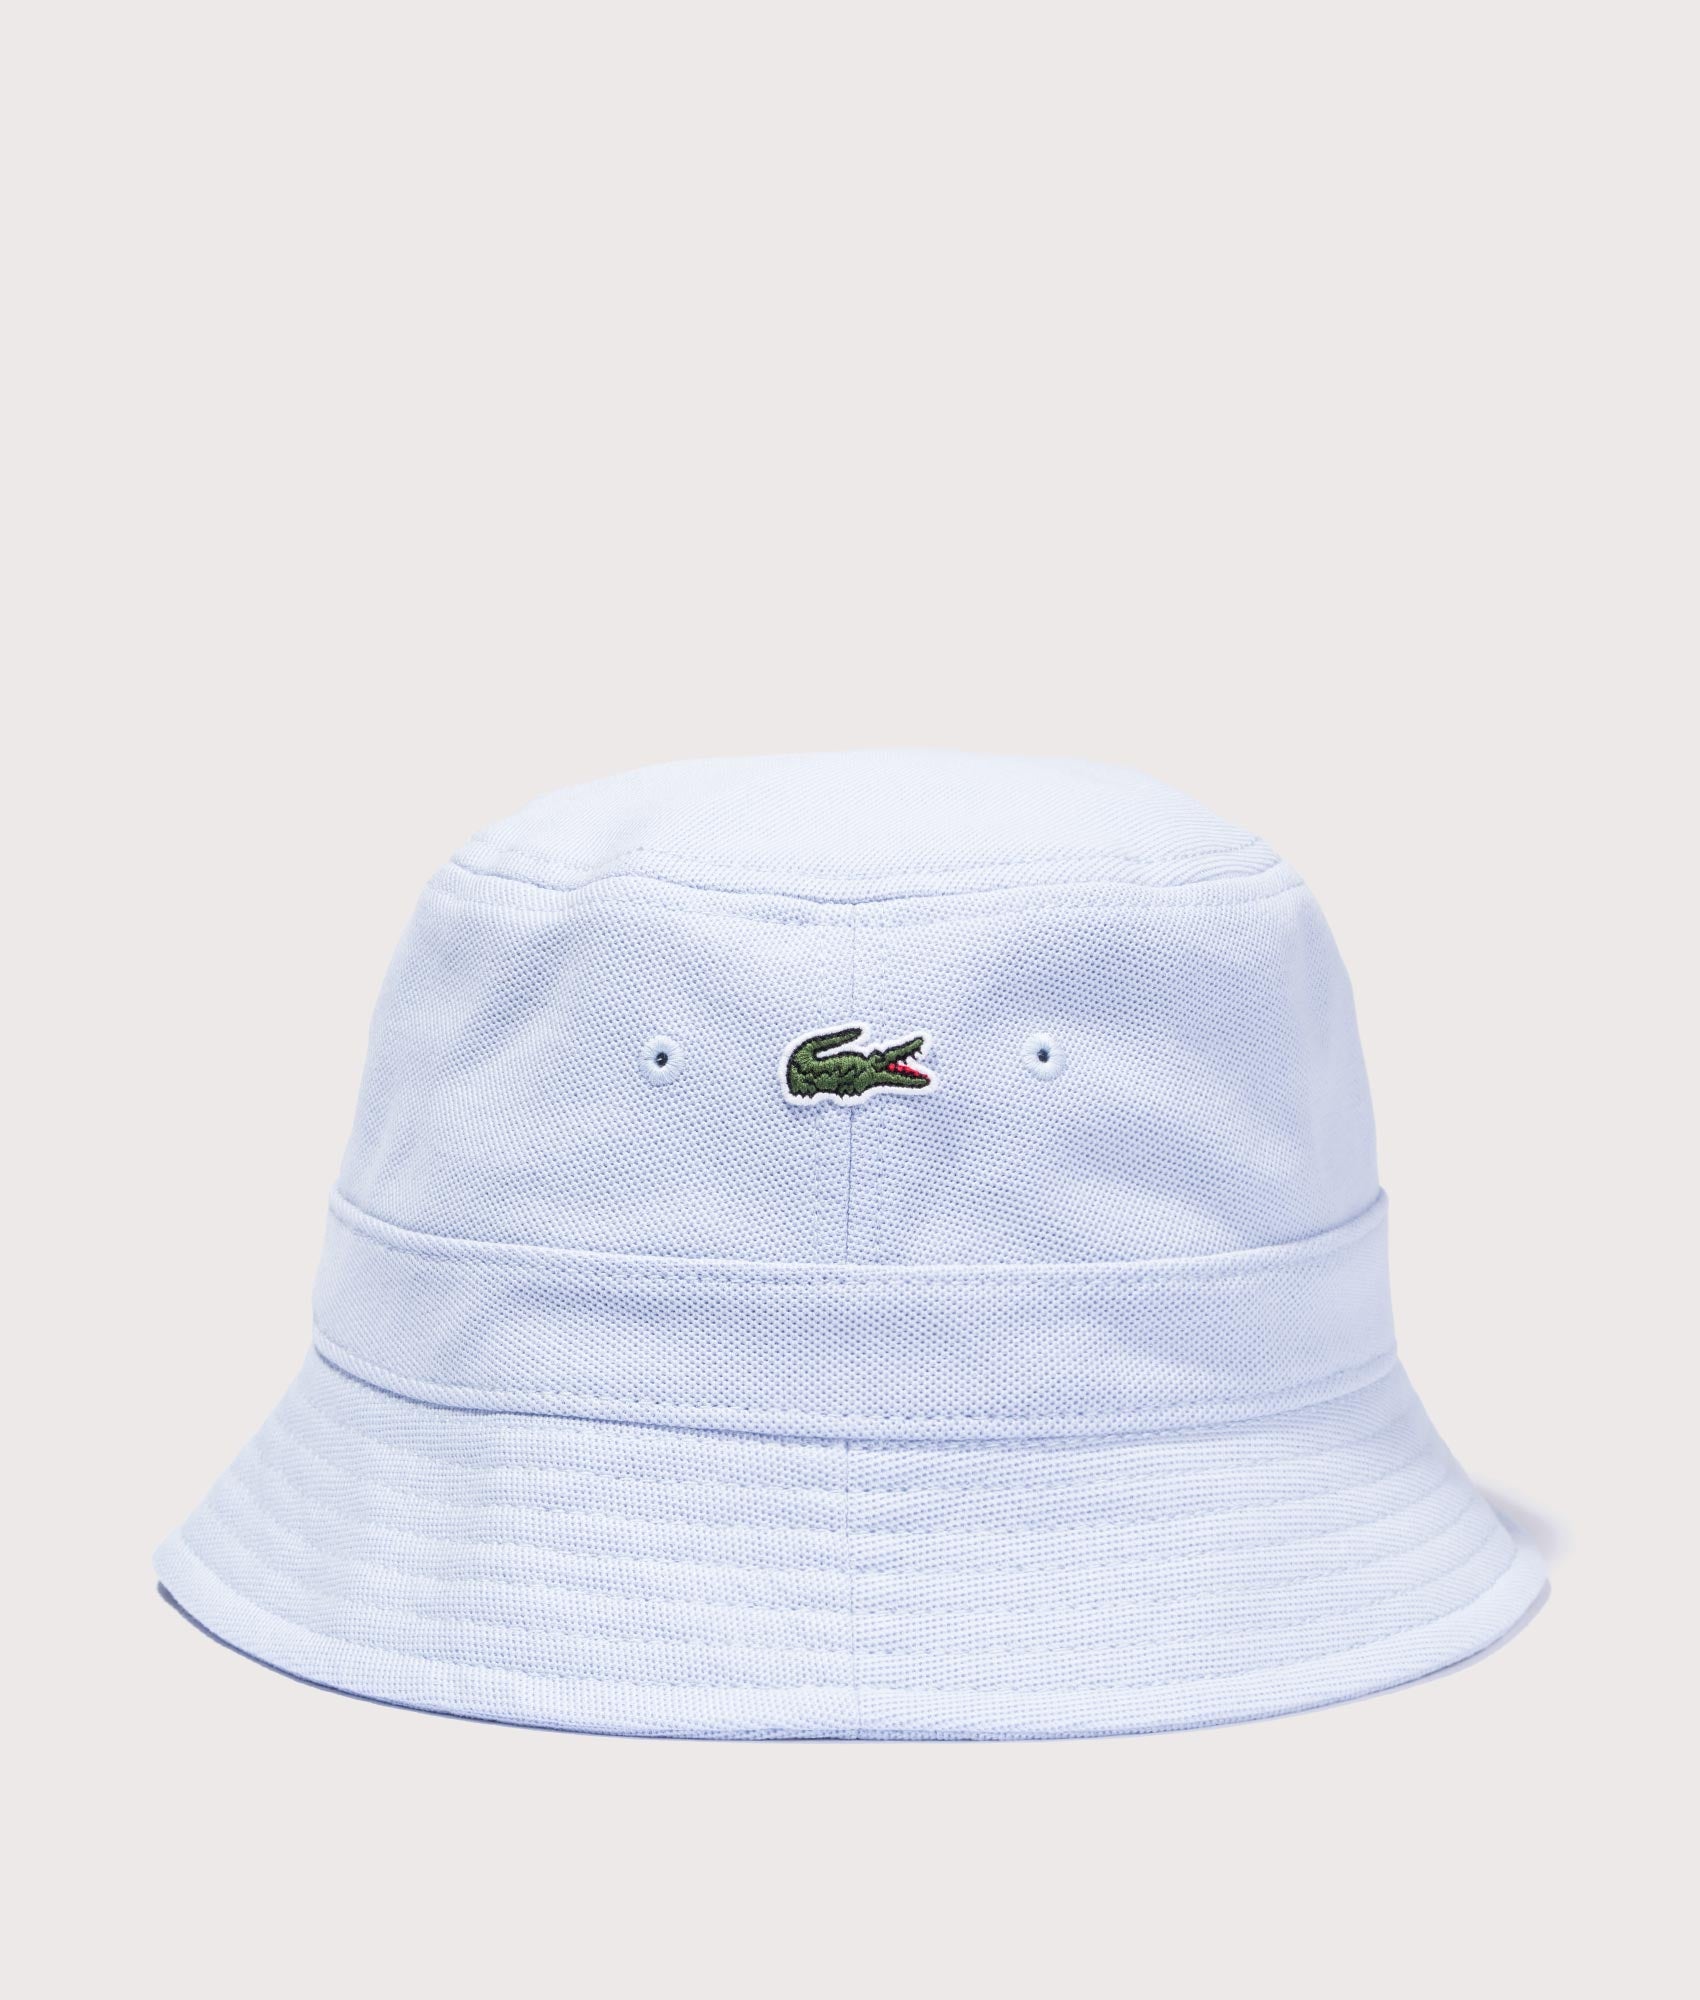 Lacoste Mens Croc Logo Bucket Hat - Colour: J2G - Size: Medium